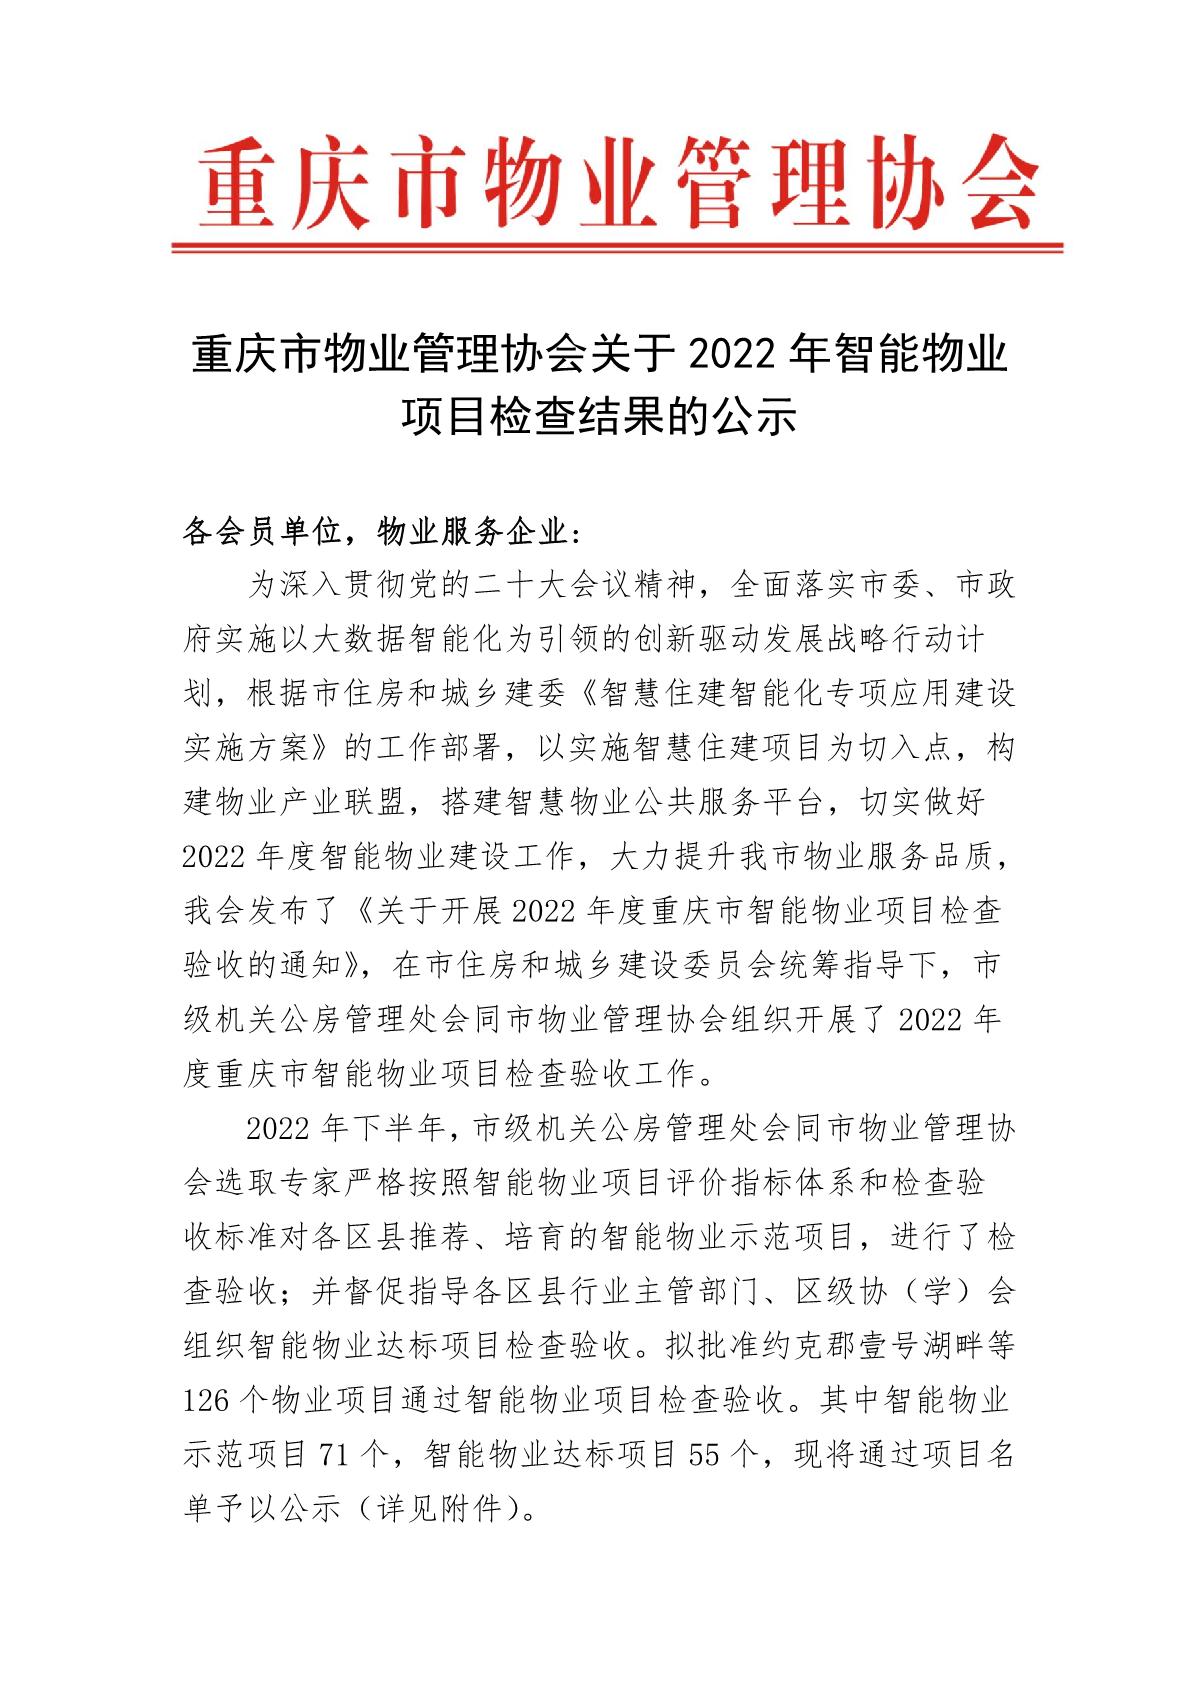 重庆市物业管理协会关于2022年智能物业项目结果的公示(1)_1.JPG